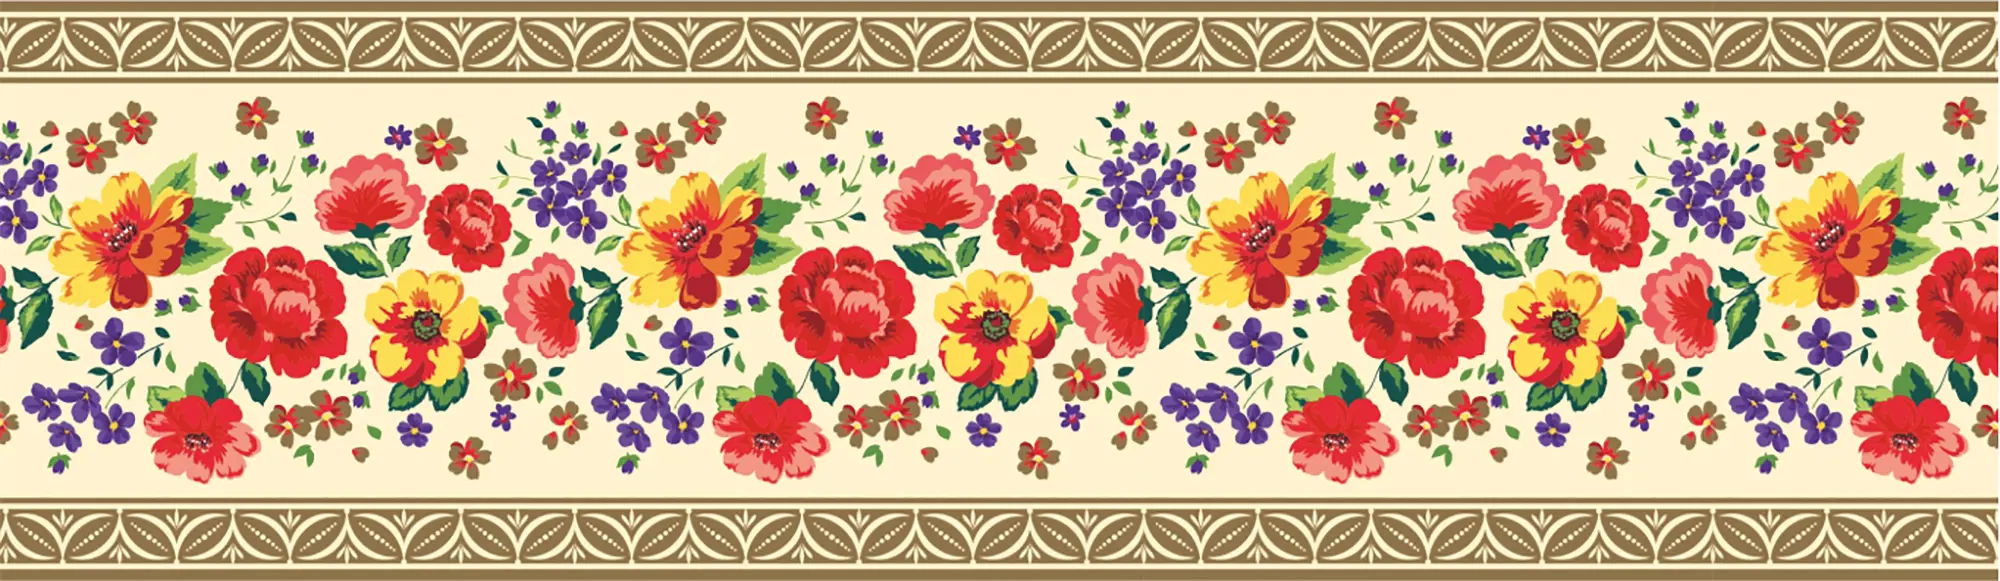 Бордюр бумажный «Симфония» Б-005 0.1x14 м, цветы, цвет мультиколор бордюр top cer